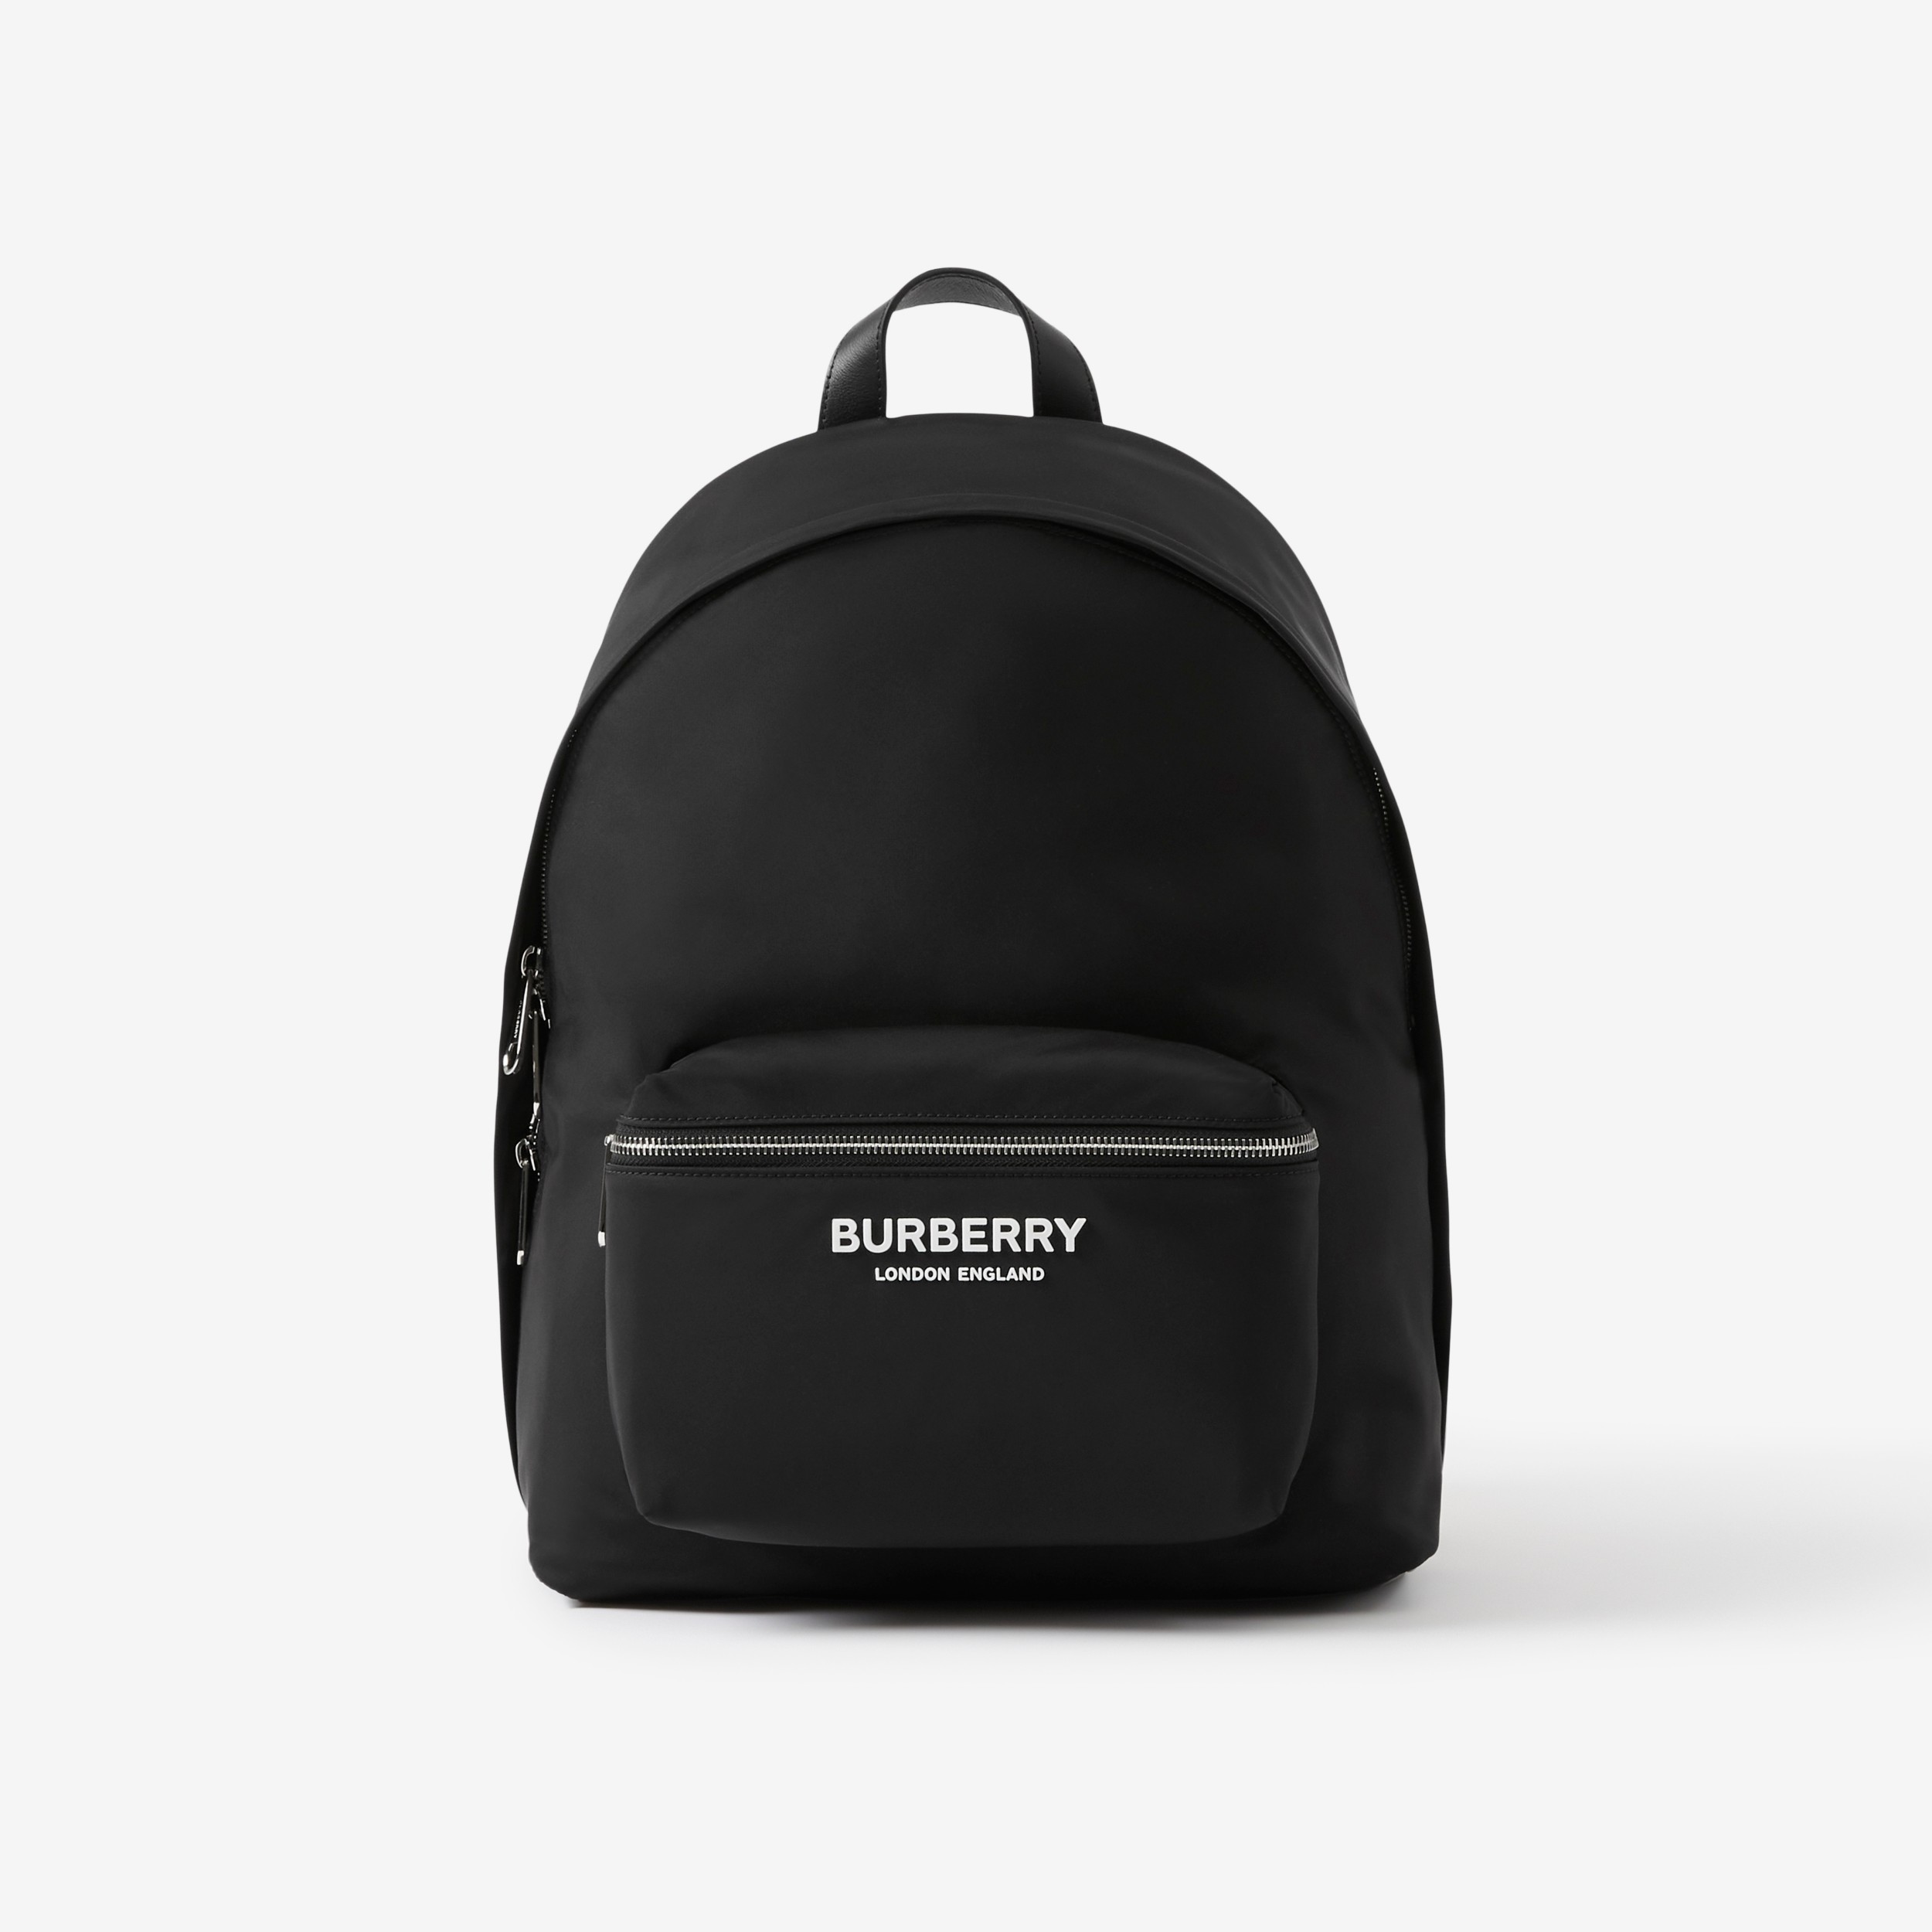 Actualizar 41+ imagen burberry logo backpack